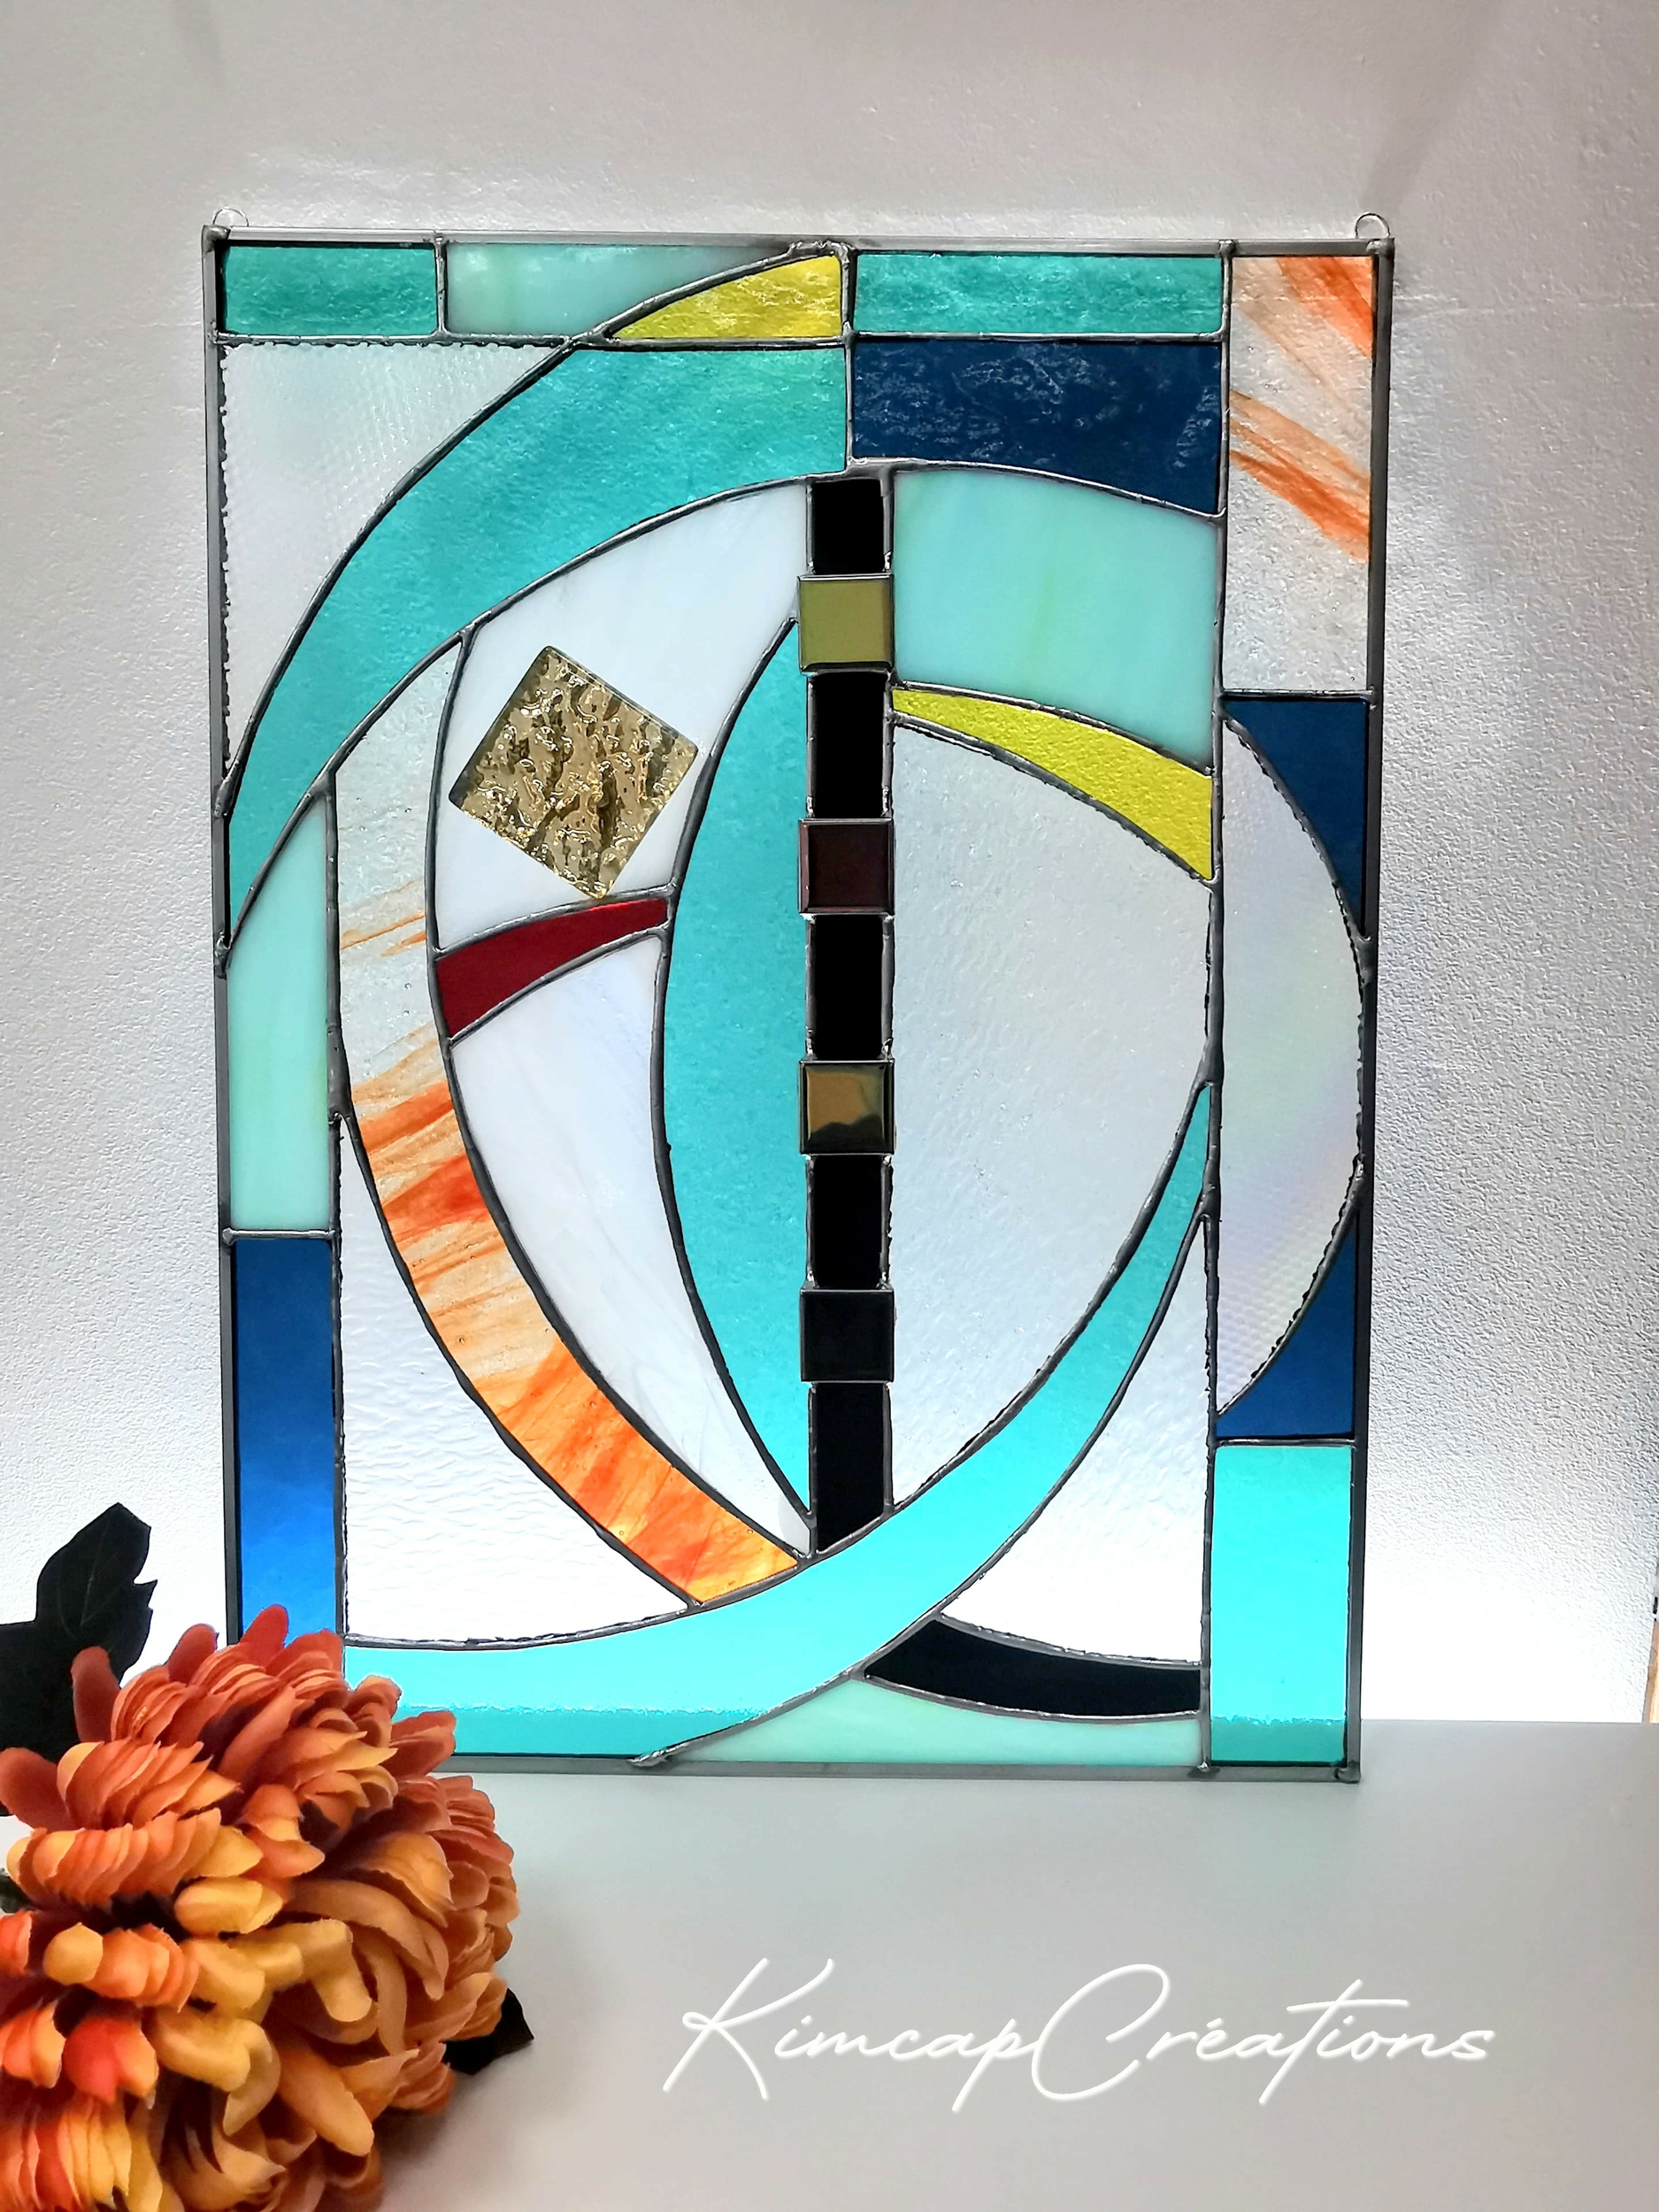 Panneau vitrail contemporain moderne pour décoration original FOKC115_240€